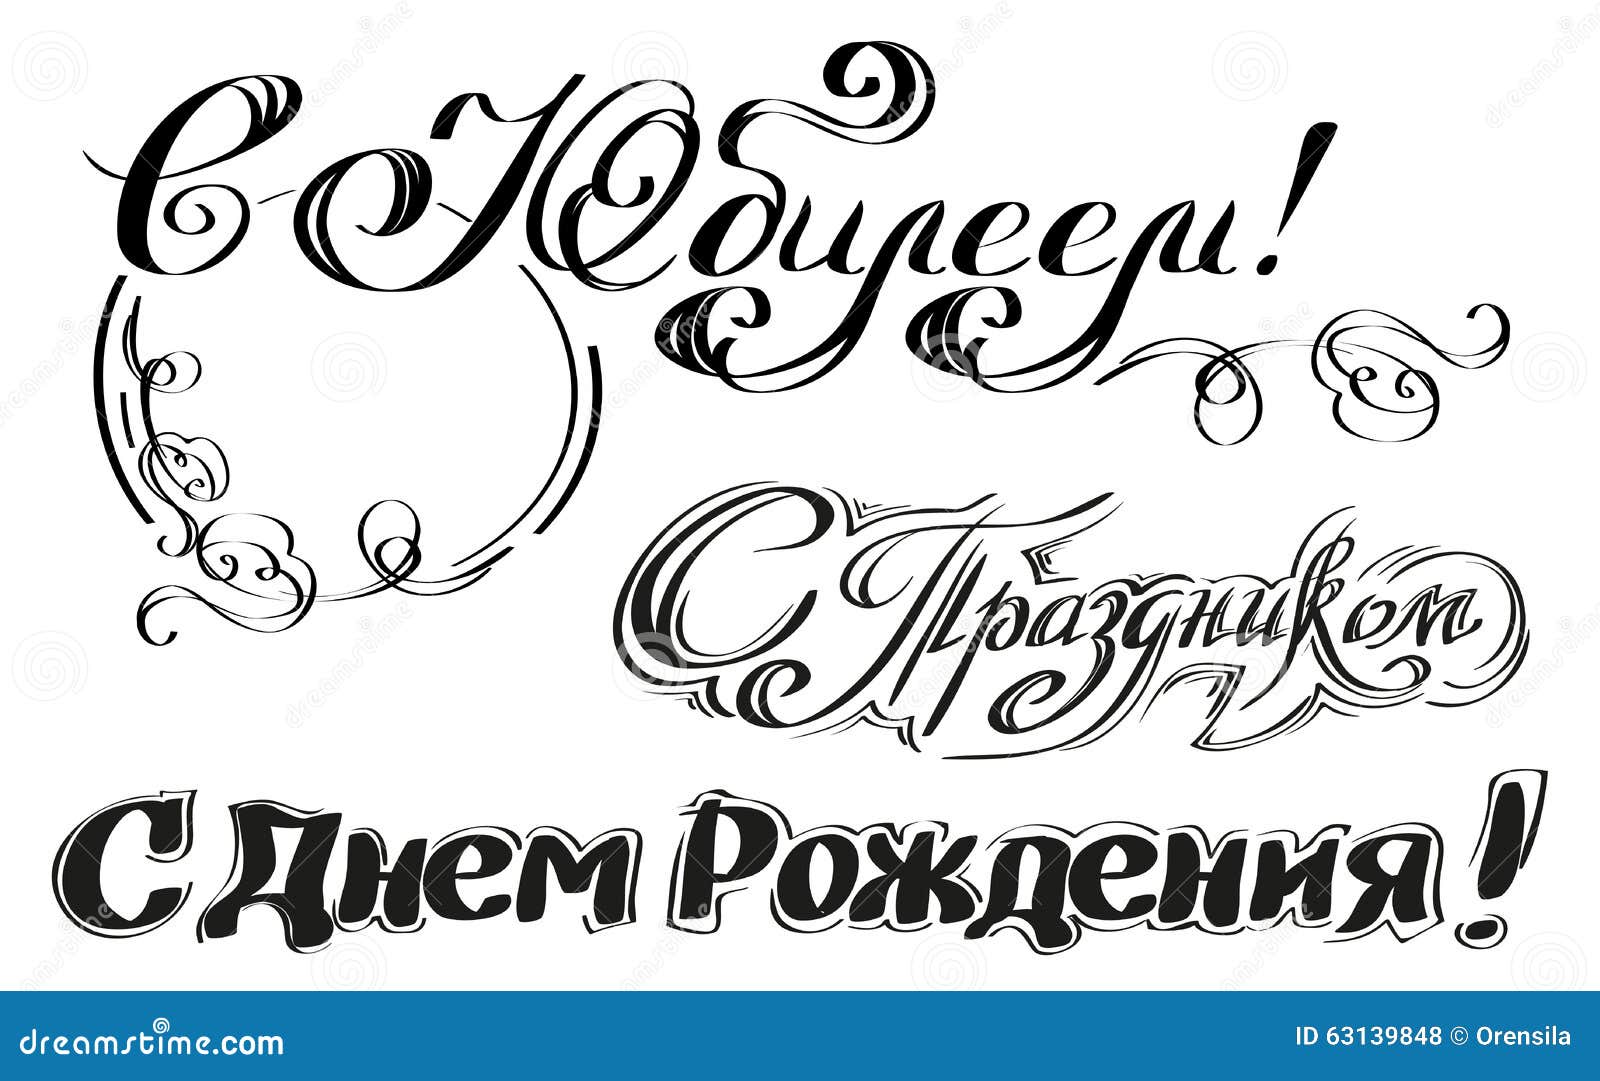 Geburtstag zum alles wünsche russisch gute auf Alles Gute